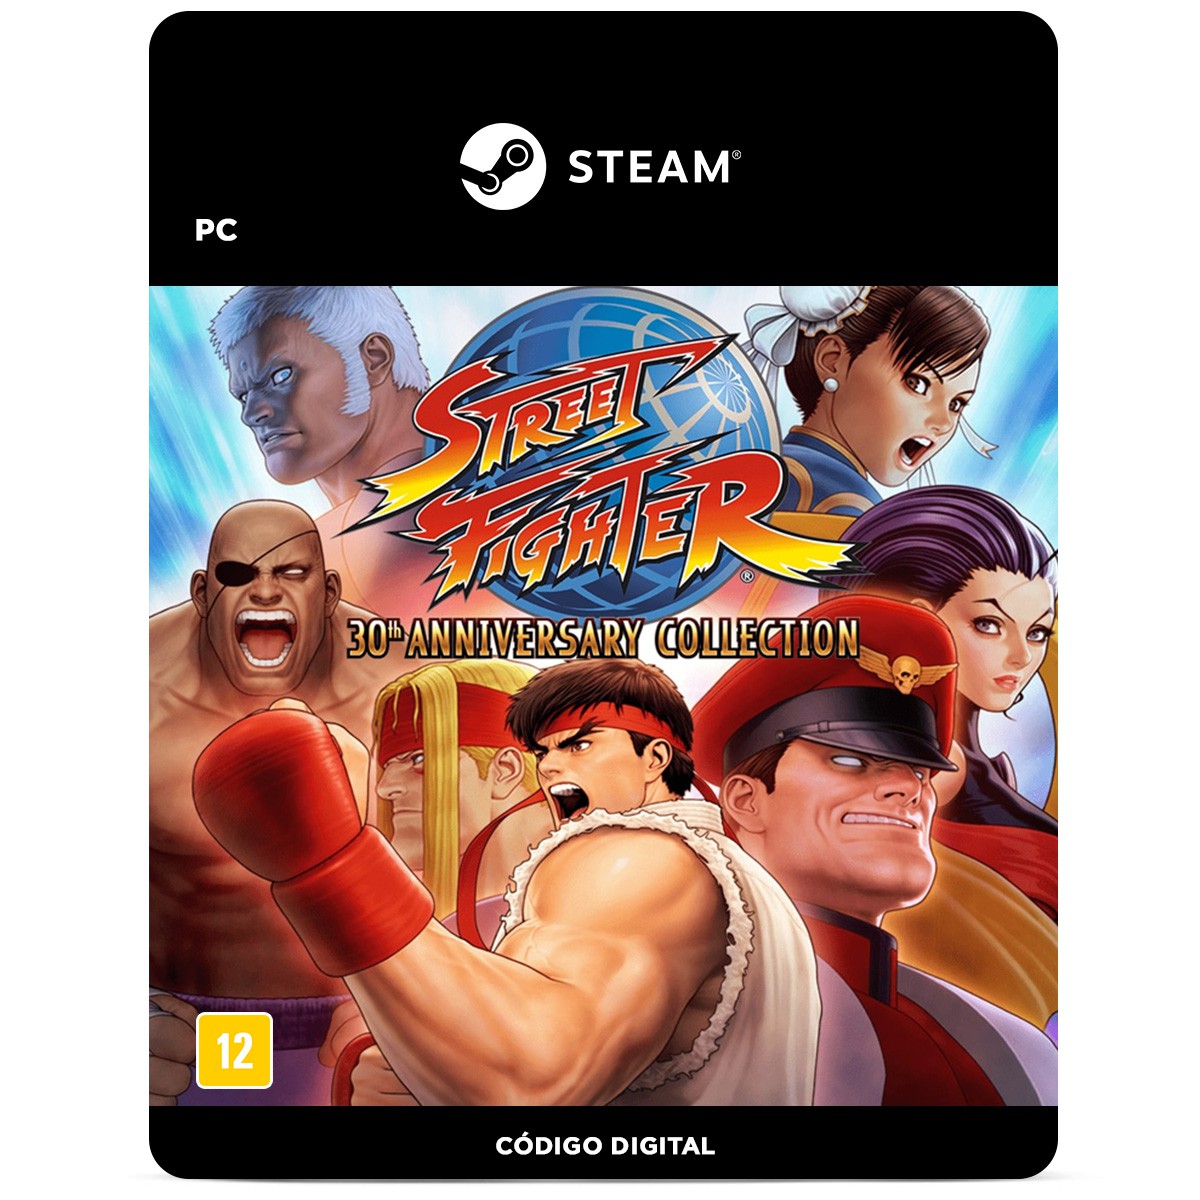 25 anos de Street Fighter Alpha 3: veja 6 curiosidades do jogo da